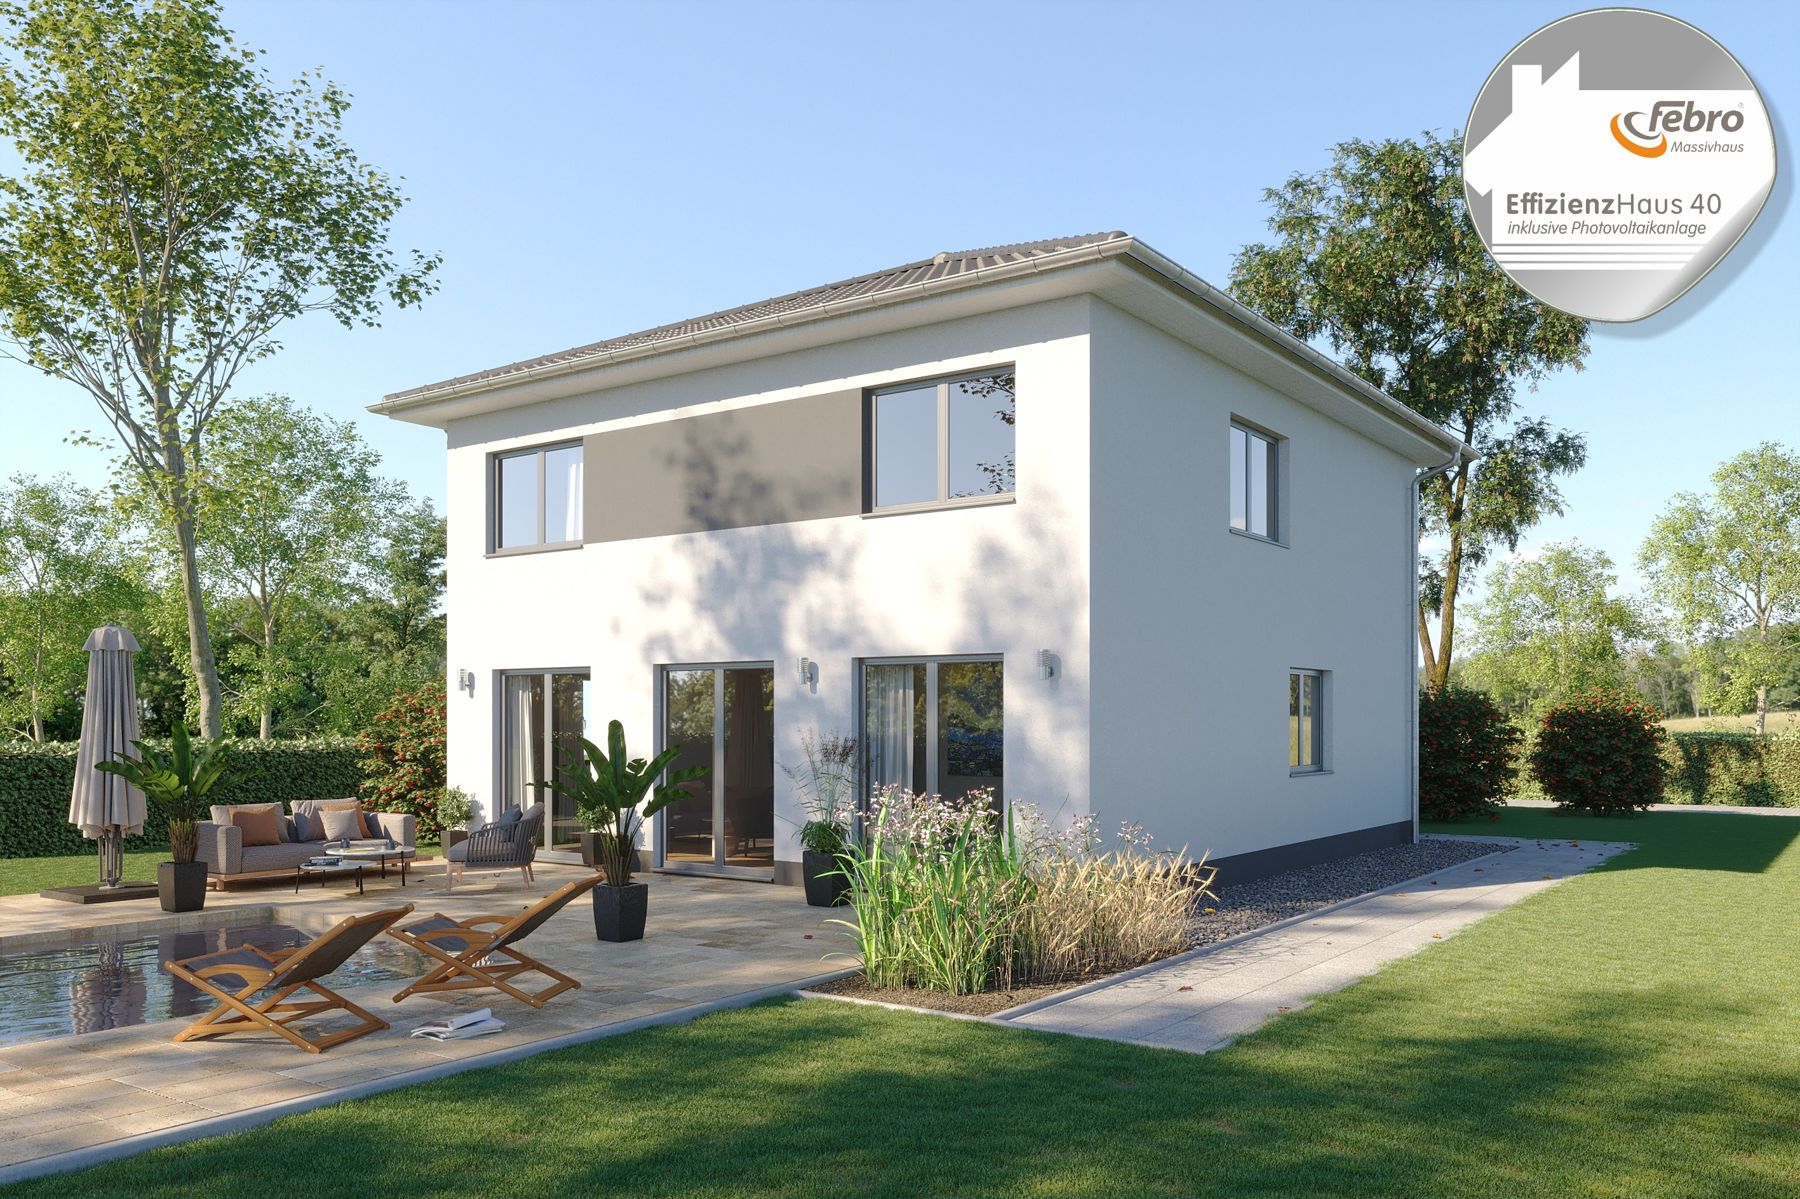 Haus Modernes Effizienzhaus 40 mit Febro Massivhaus in Naunhof - Hier kann Ihr Traum wahr werden.